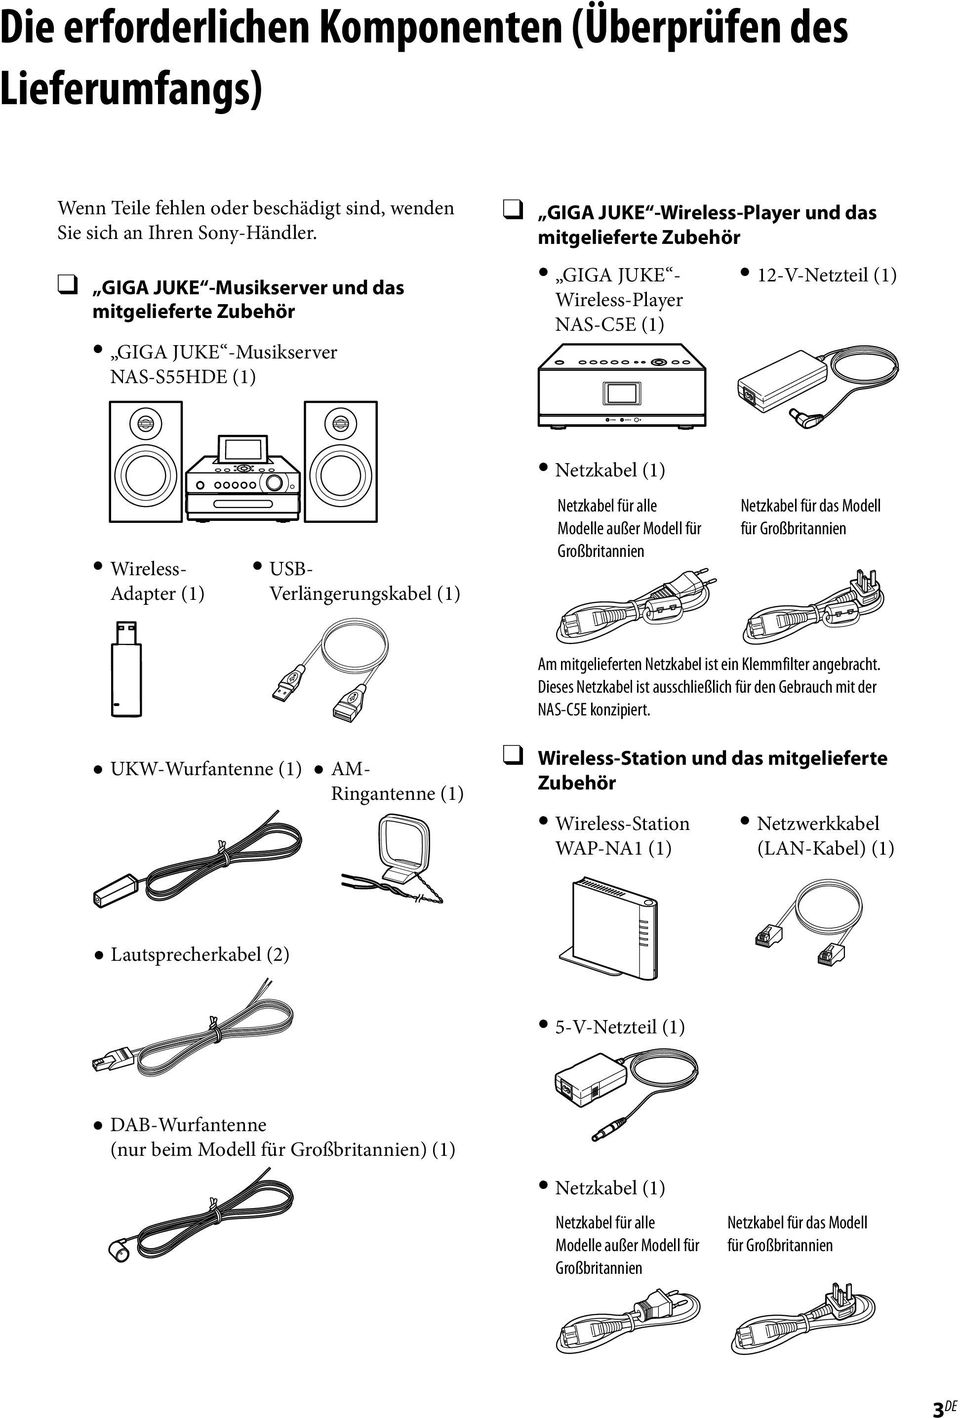 12-V-Netzteil (1) Netzkabel (1) Wireless- Adapter (1) USB- Verlängerungskabel (1) Netzkabel für alle Modelle außer Modell für Großbritannien Netzkabel für das Modell für Großbritannien Am